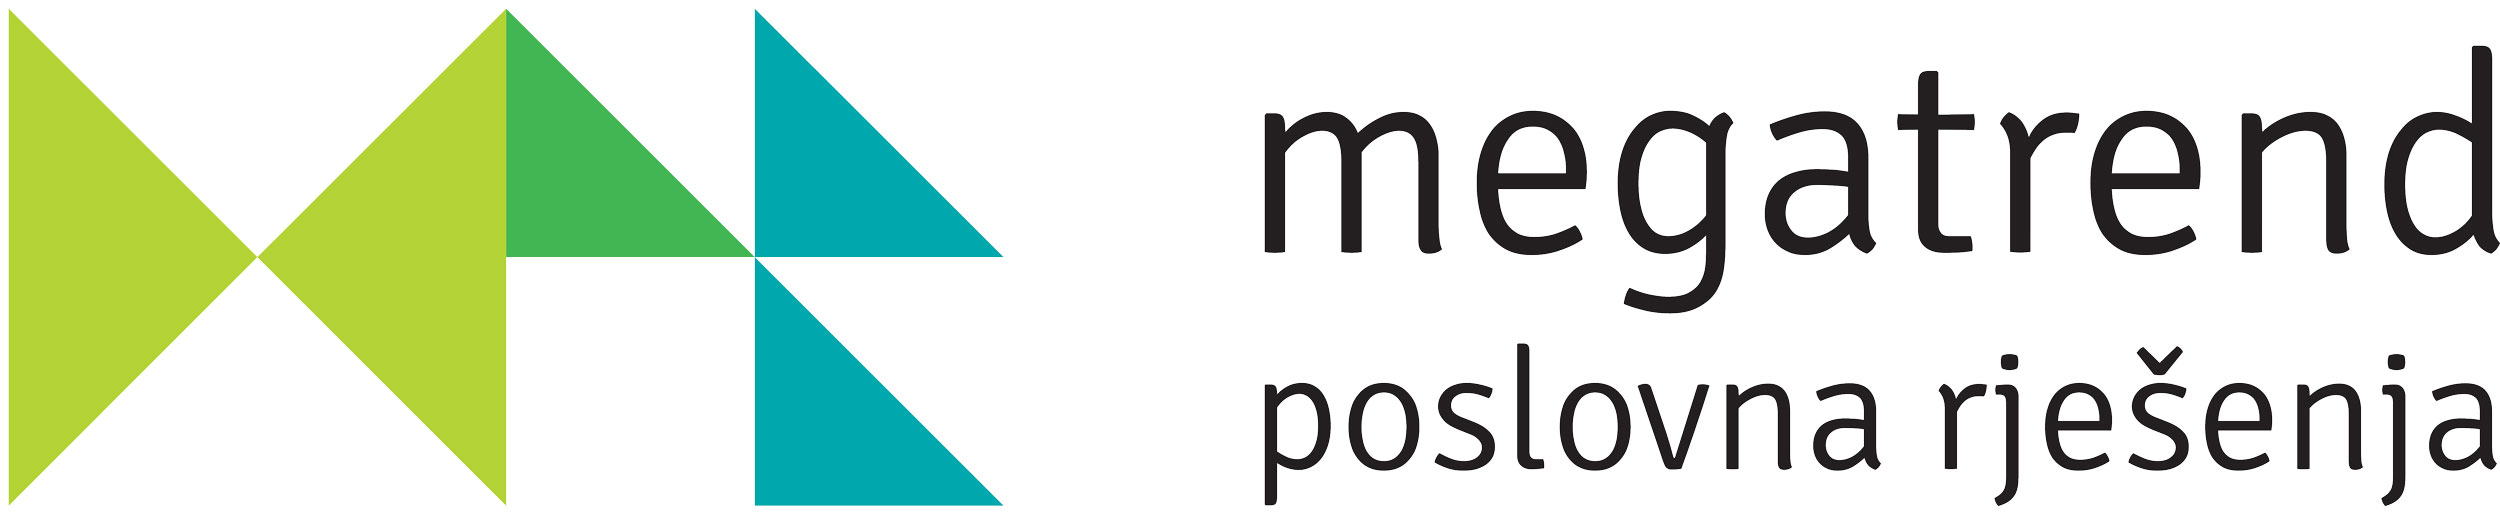 Logotipo de Megatrend